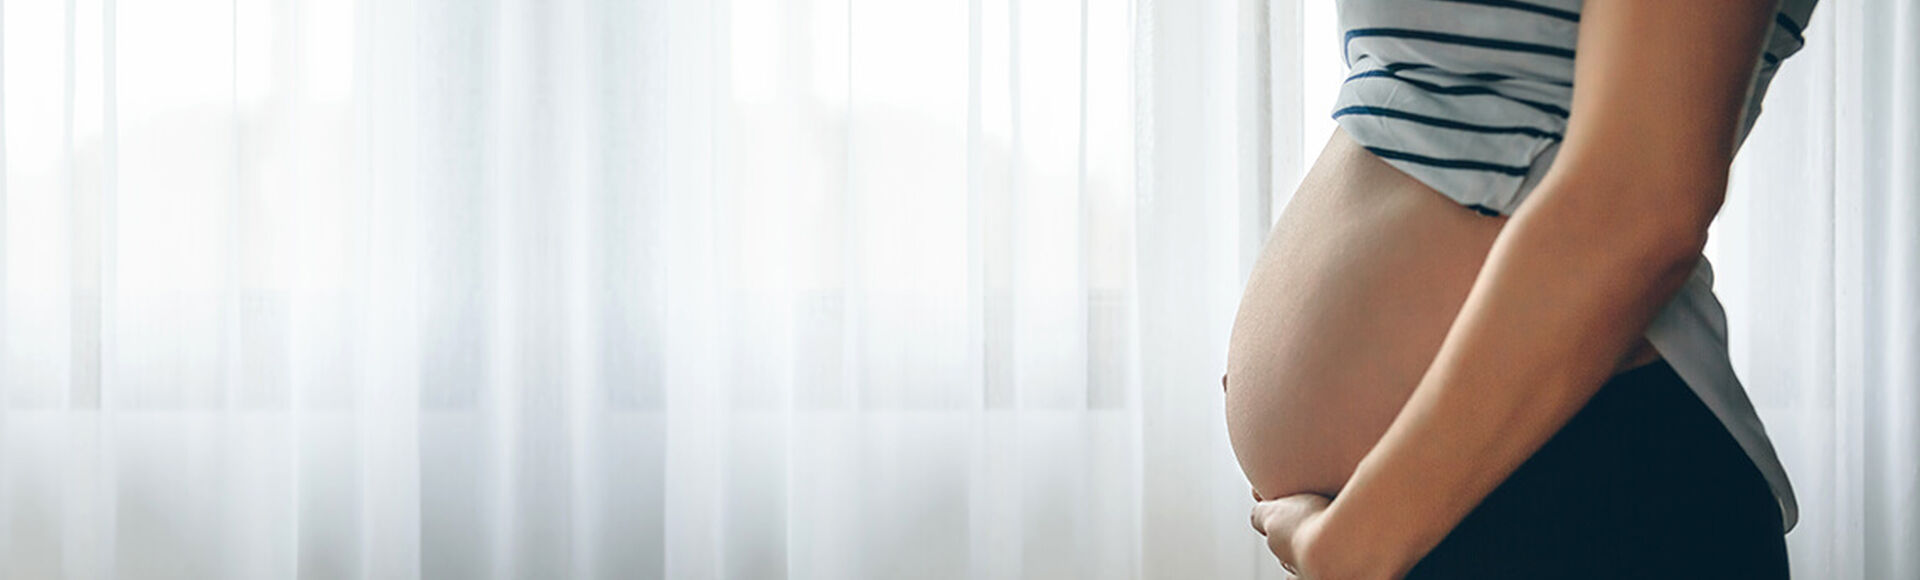 Información de la semana 27 de embarazo | Más Abrazos by Huggies